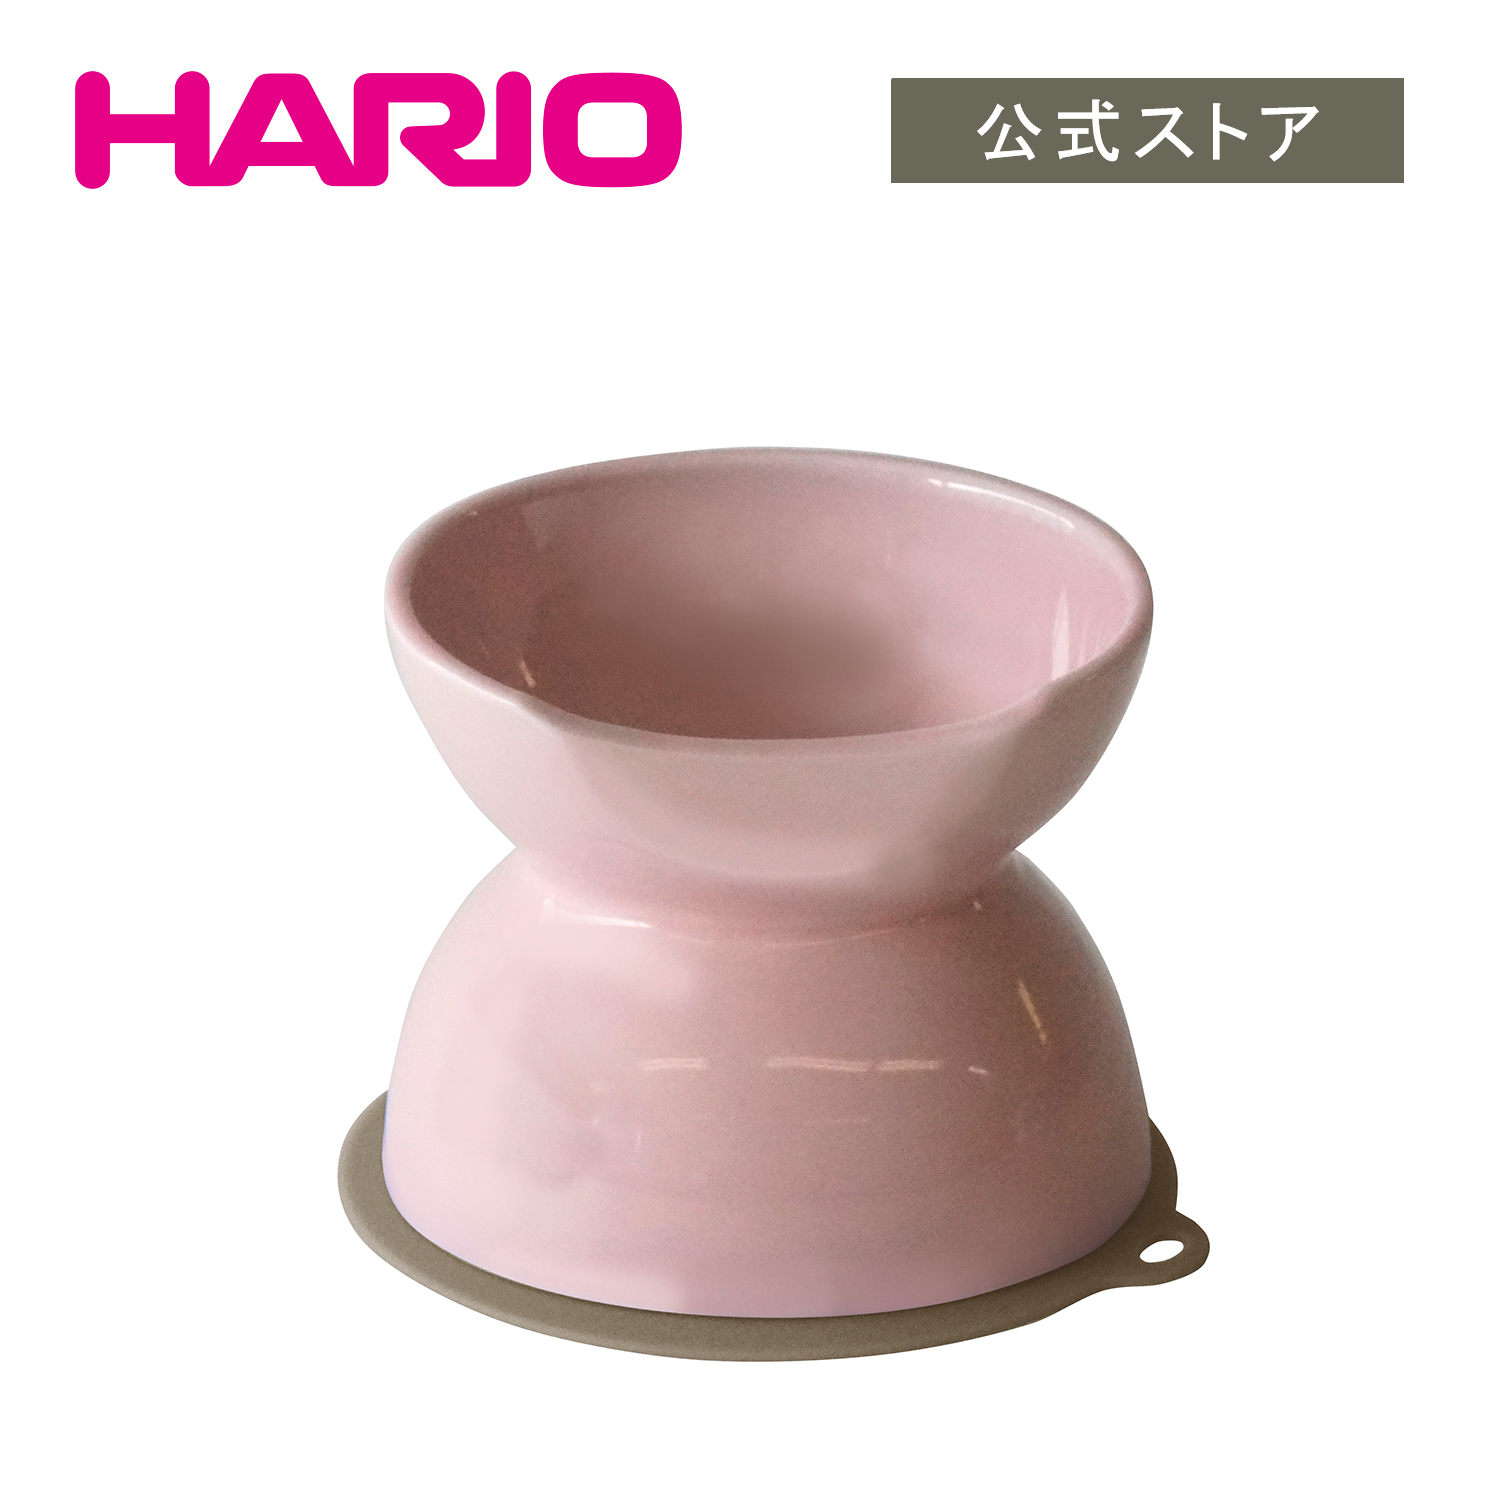 高い位置で食べられる 至上 浅型 深型 両面使える犬用食器 水飲み皿 HARIO 3PTS-CBD-PPR 爆売り ペールピンク チビプレダブル